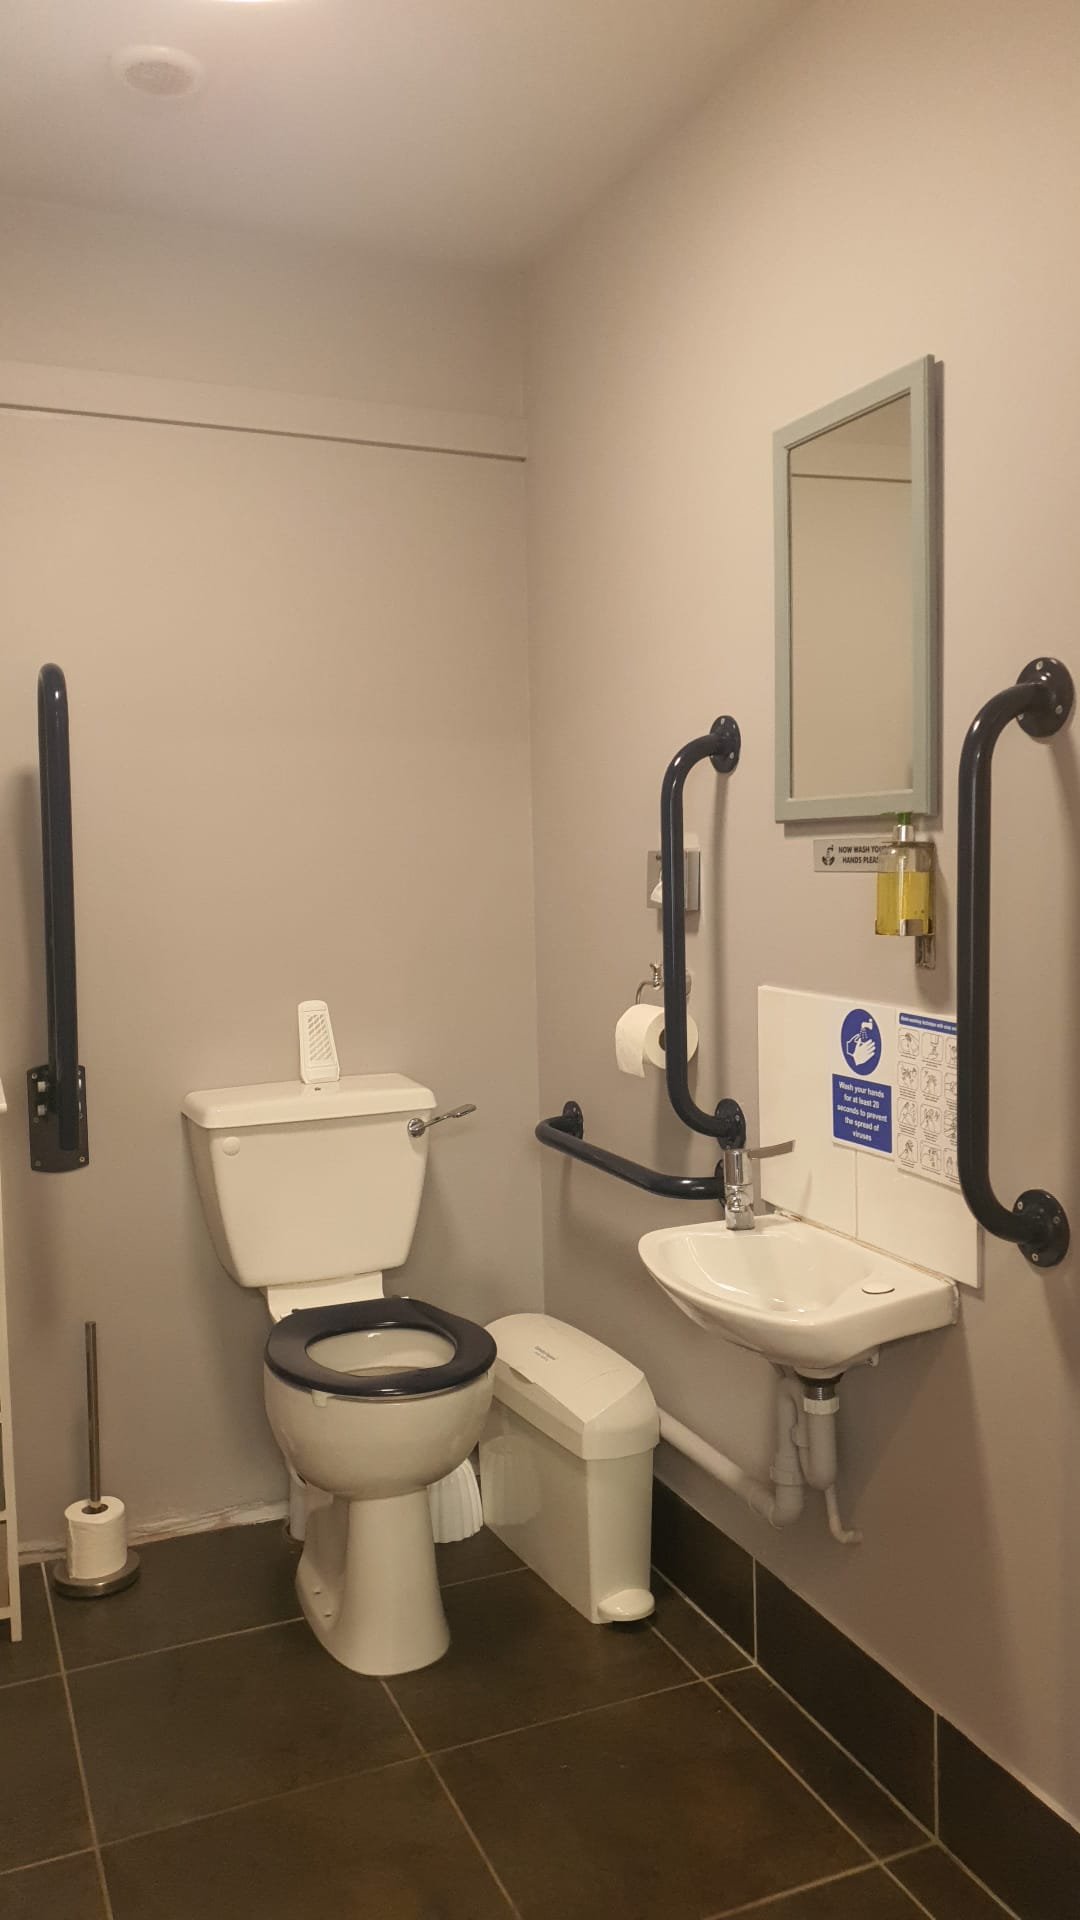 Reception / Treatment Rooms Doc M Bathroom